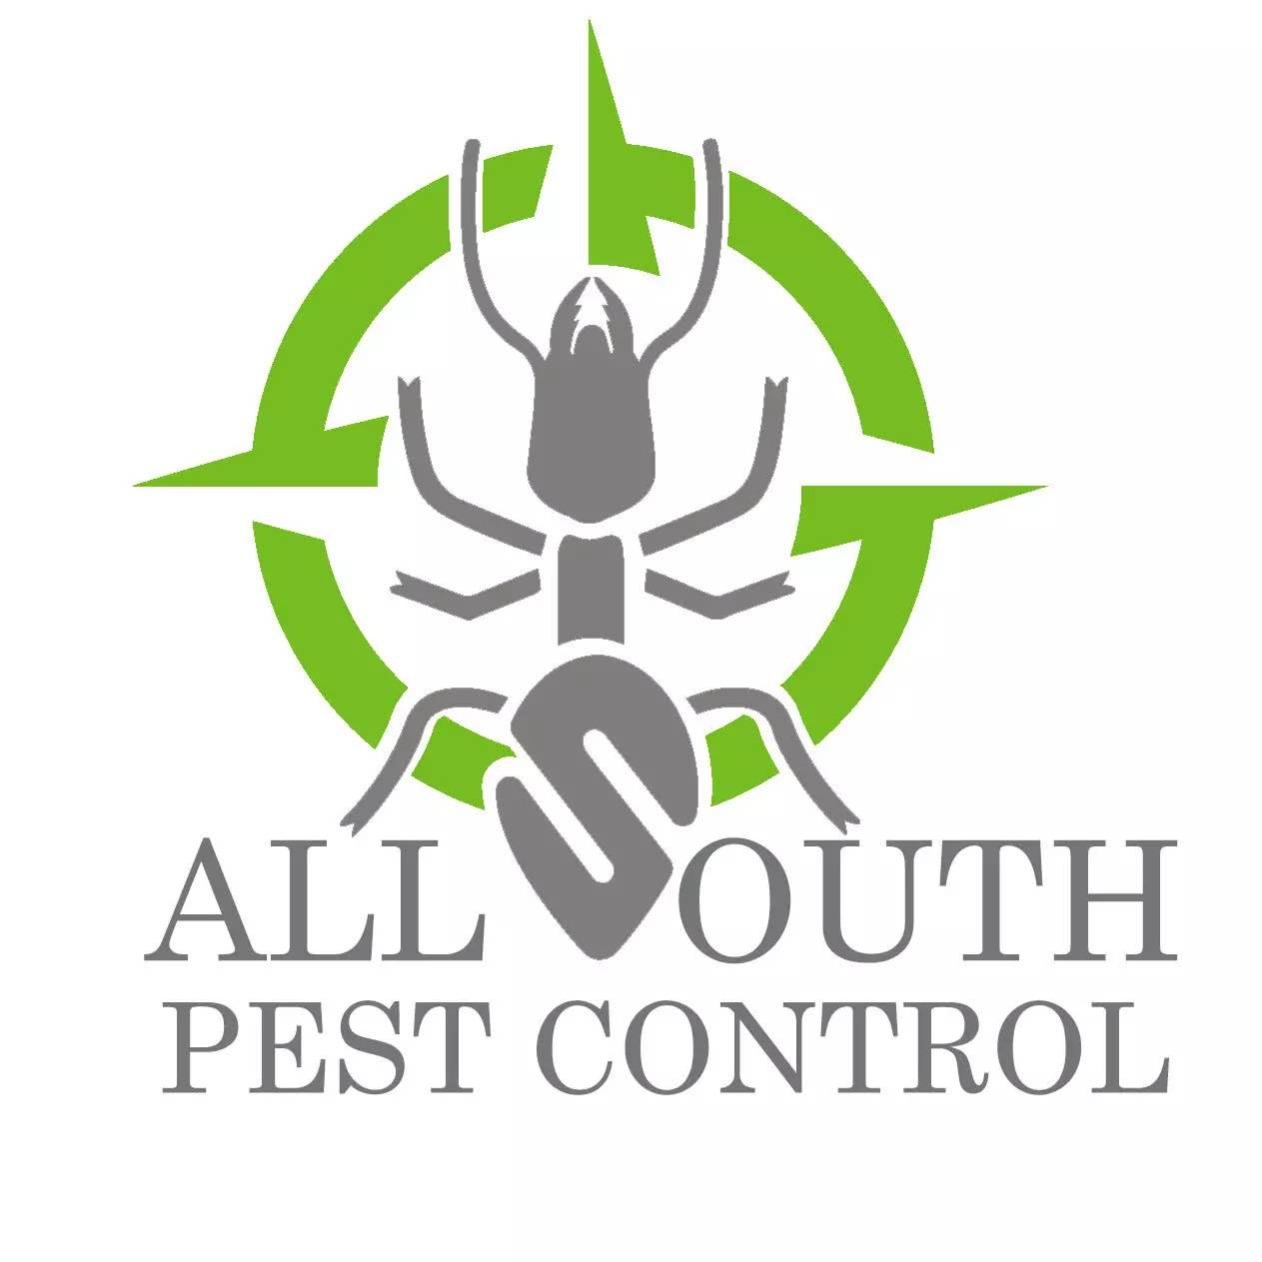 All South Pest Control - McDonough, GA 30253 - (678)541-9162 | ShowMeLocal.com